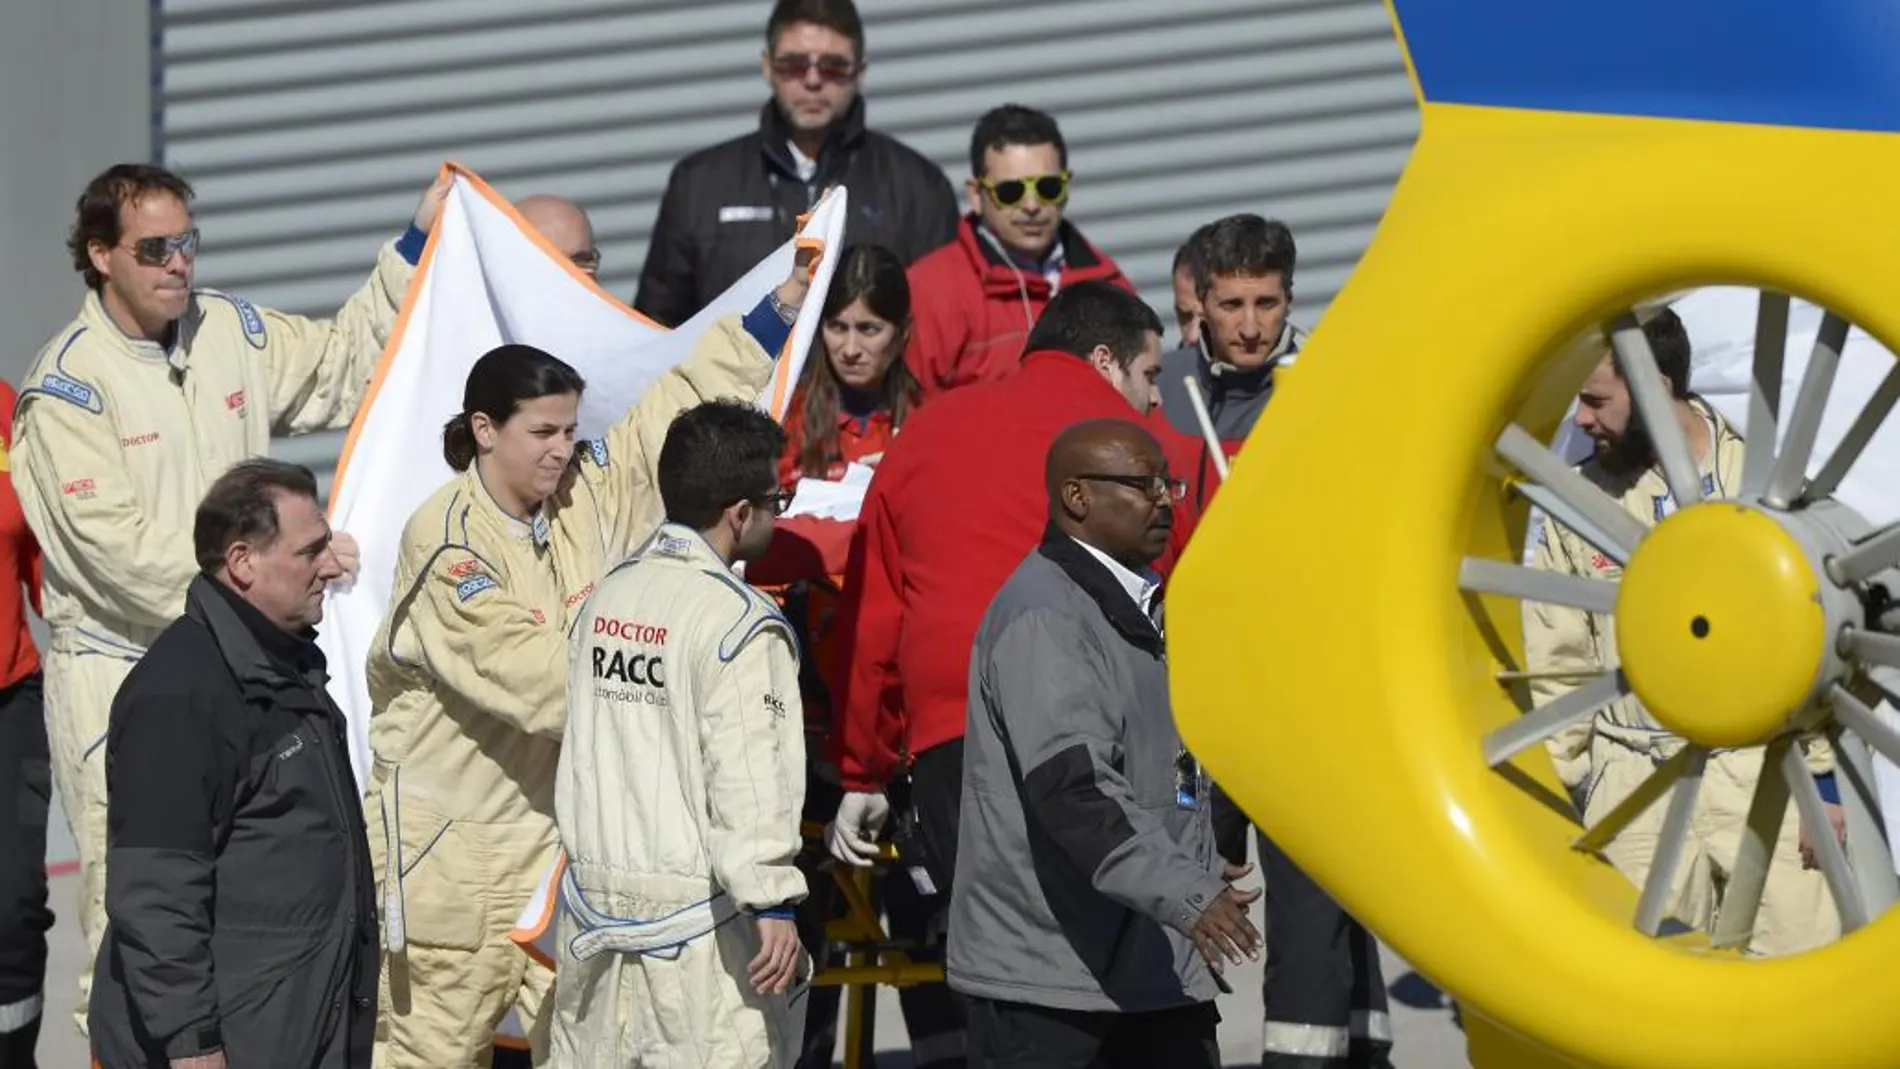 Los equipos demandan a Honda y McLaren información concluyente sobre el accidente.